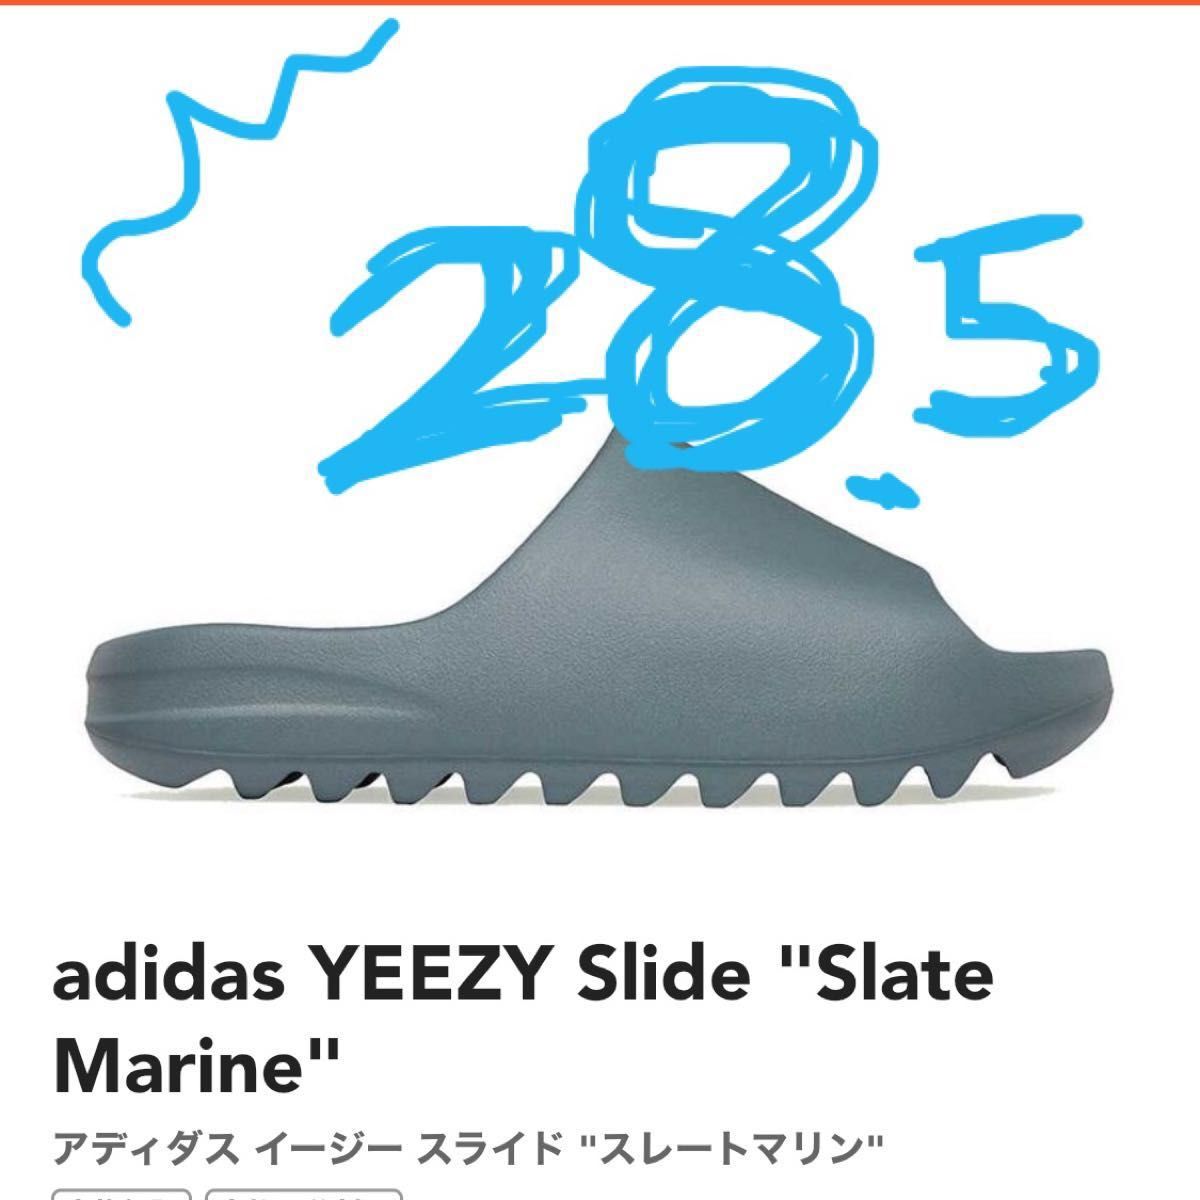 adidas YEEZY Slide Slate Marine アディダス イージー スライド